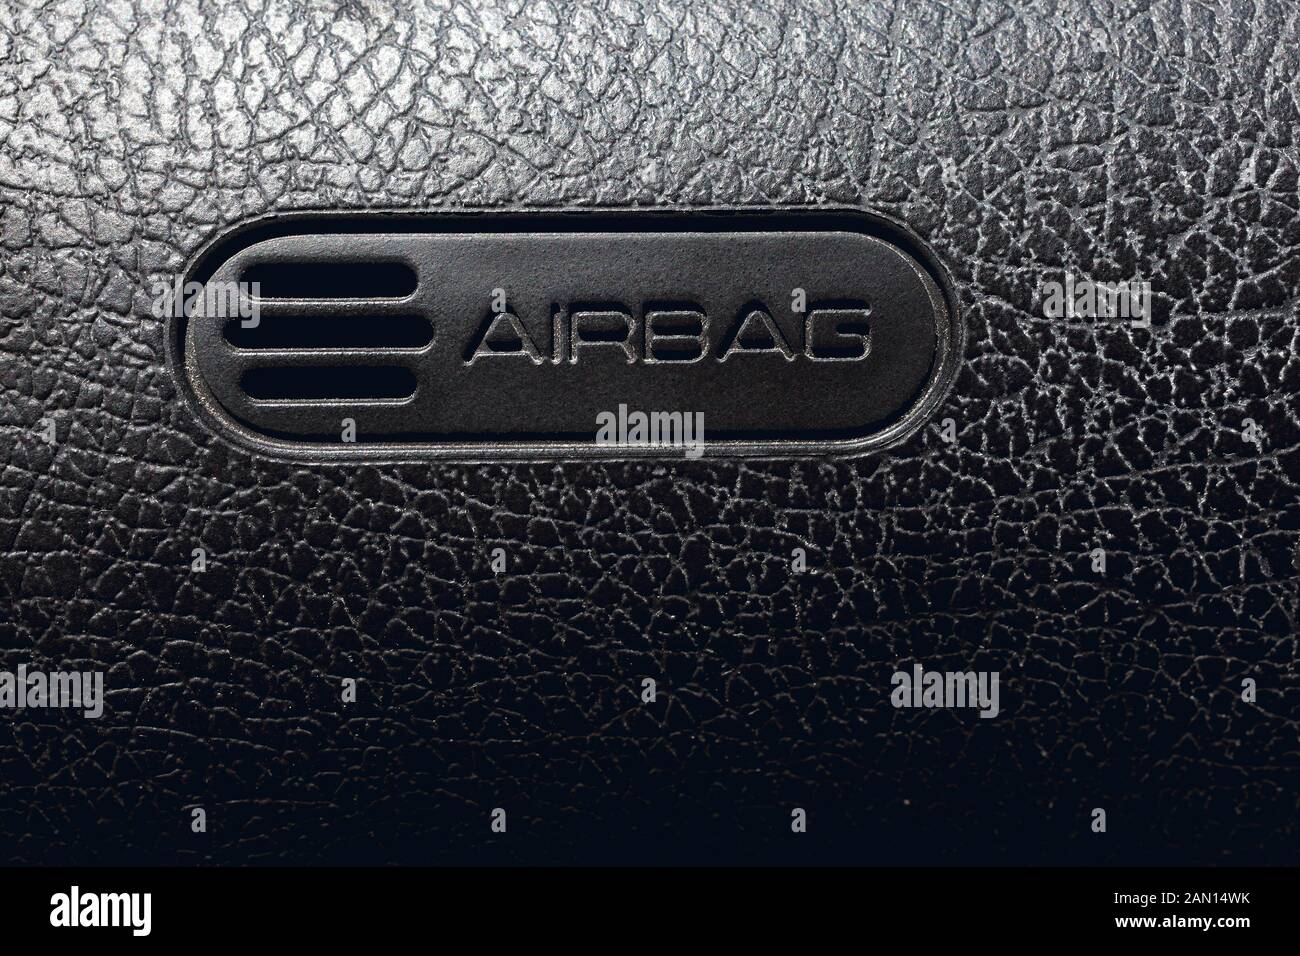 Chiudere l immagine della texture in pelle cruscotto di automobile e airbag. Immagine concettuale della tecnologia e smart auto Foto Stock